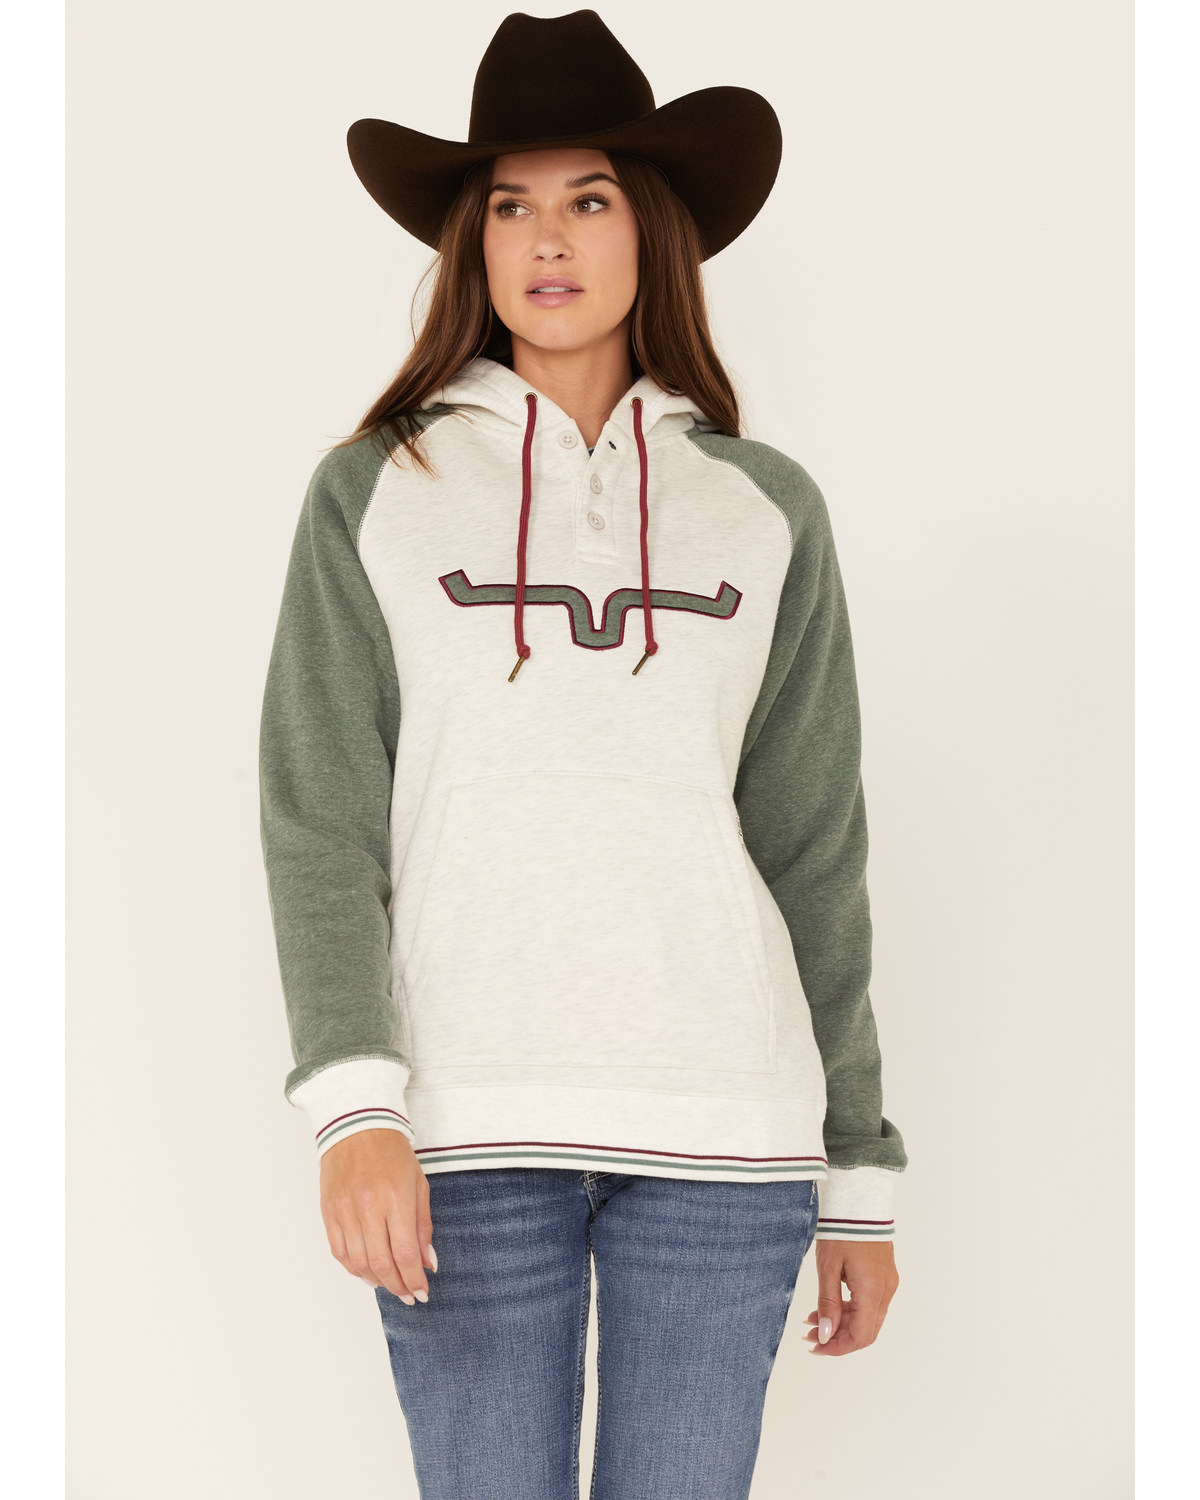 Kimes Ranch Women's Boot Barn Exclusive Amigo Logo Hooded Pullover